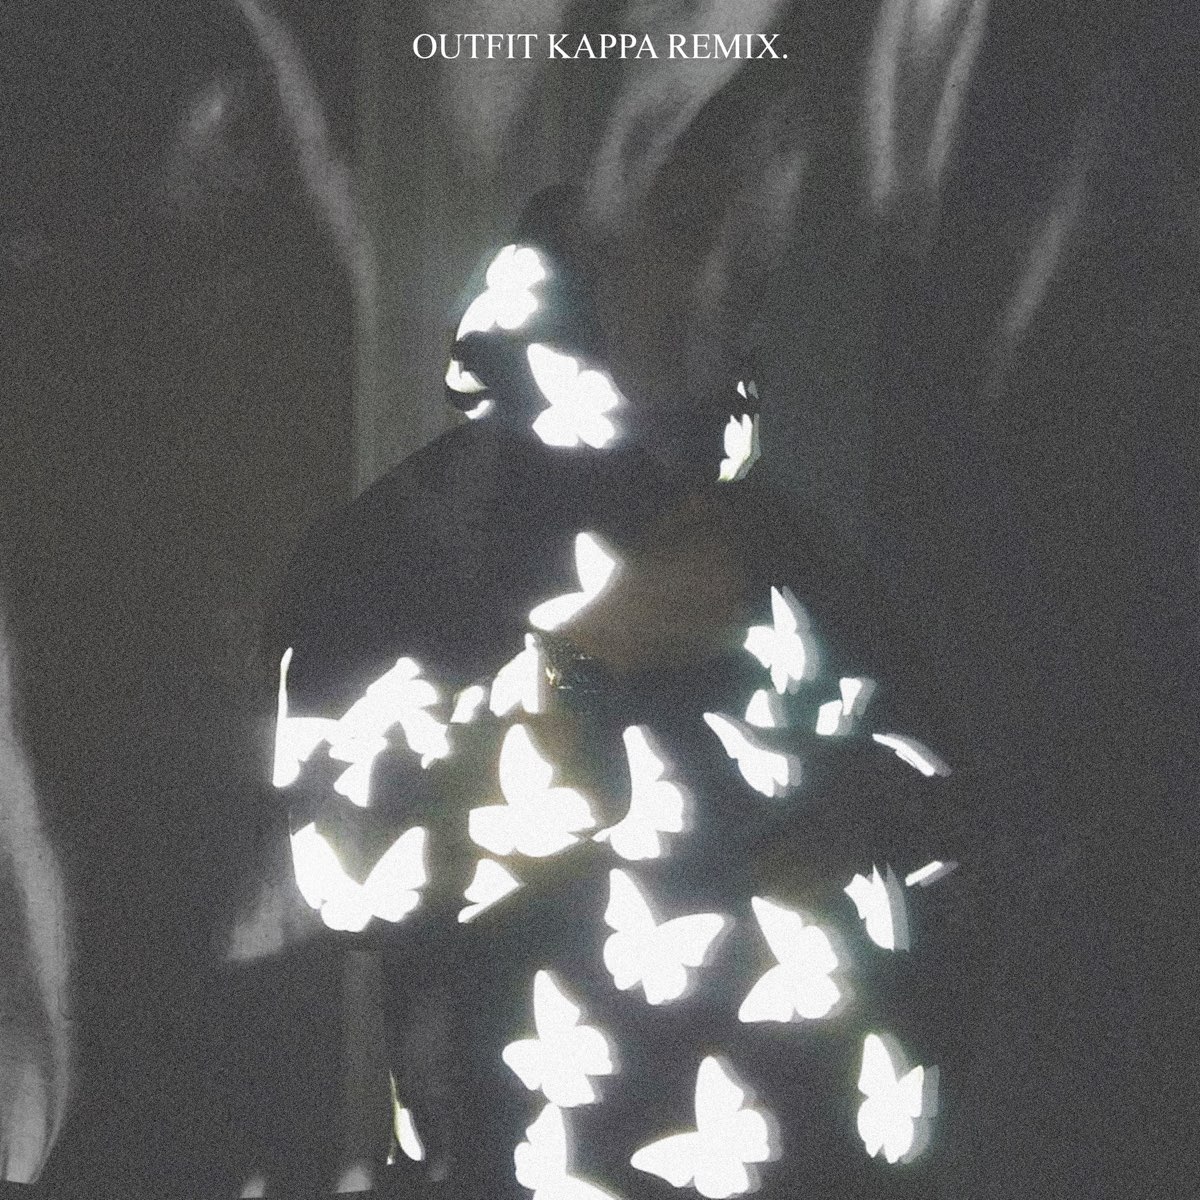 Outfit Kappa Remix (feat. Ronny, Llan Flu & KlownWMF) - Single by JuicyNise  on Apple Music